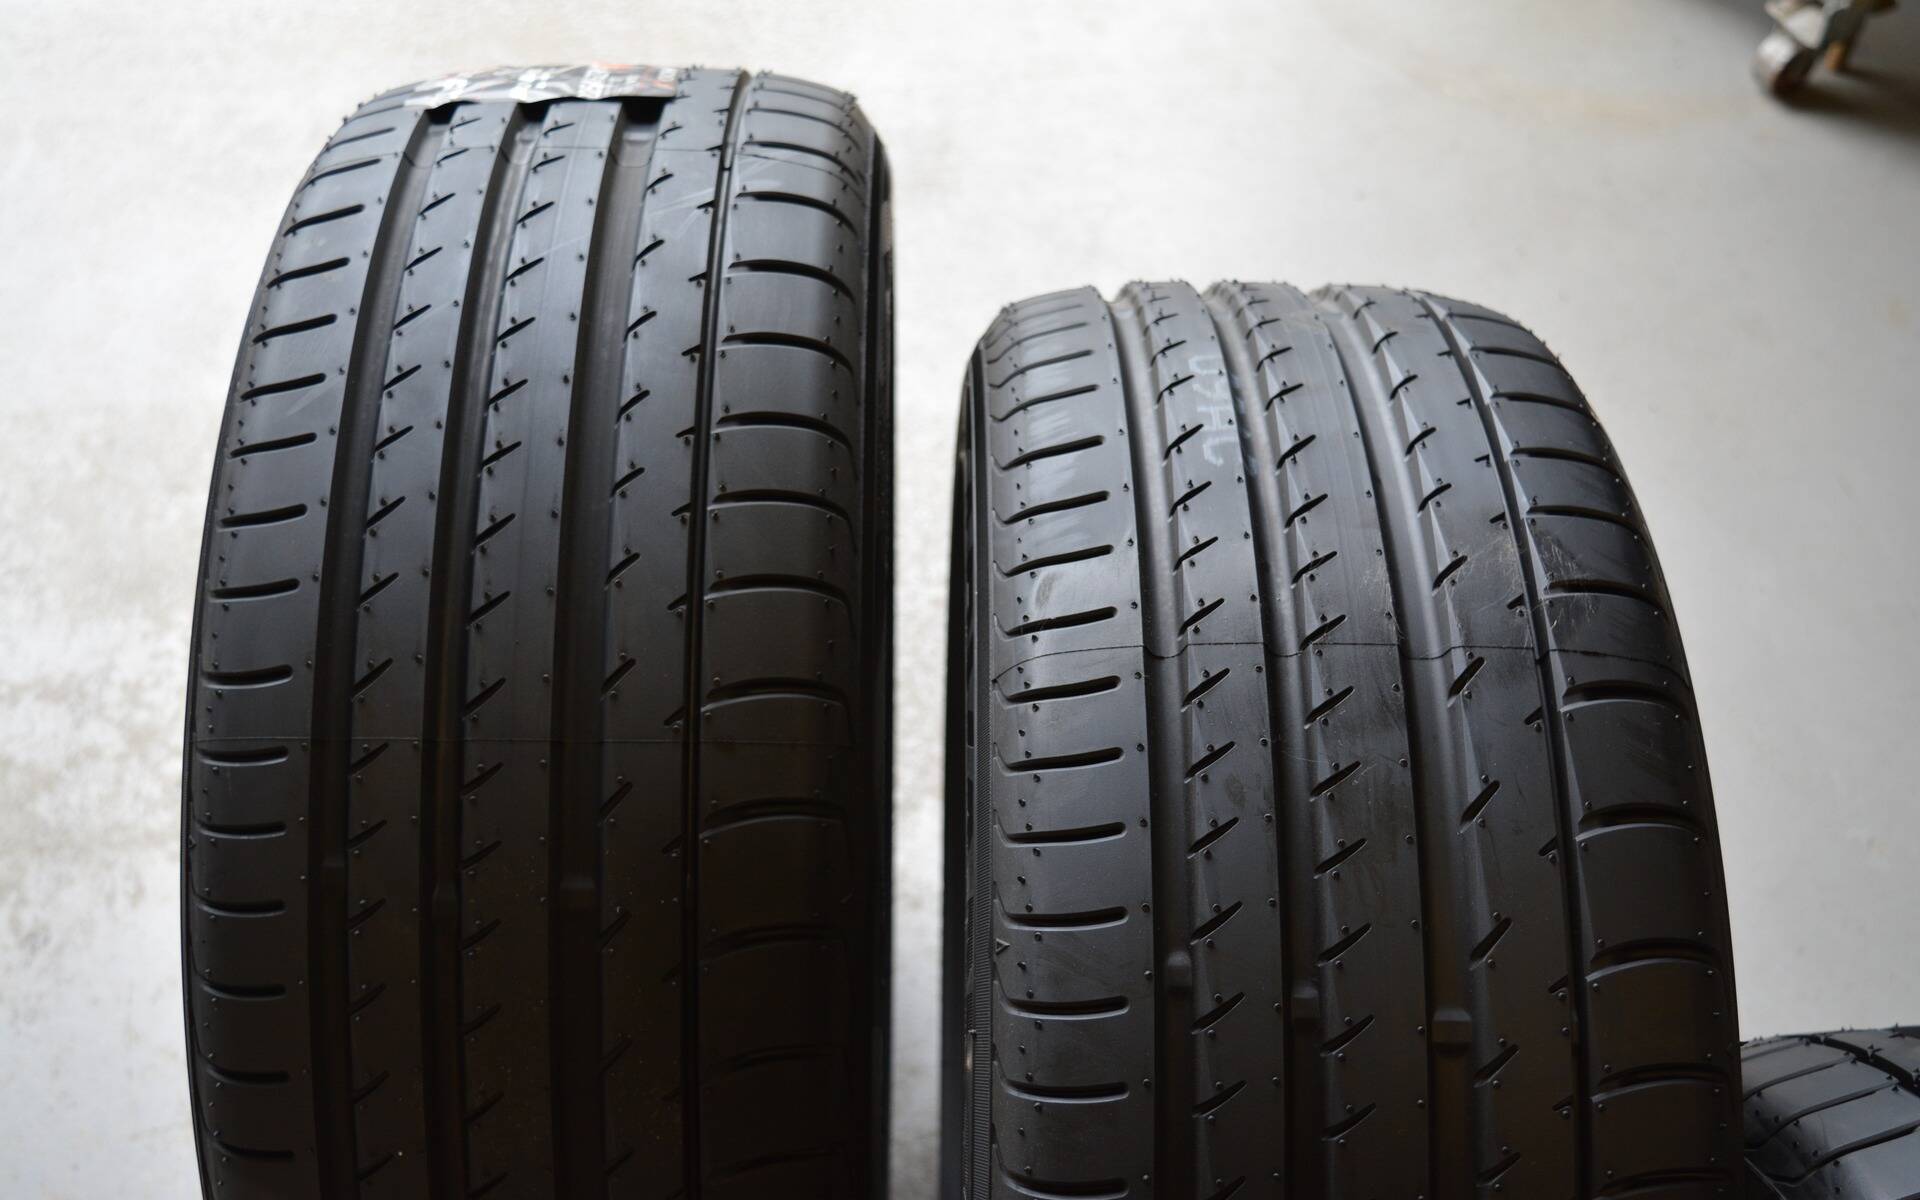 Pression des pneus : vérifier et gonfler ses pneus ! - Chacun sa route